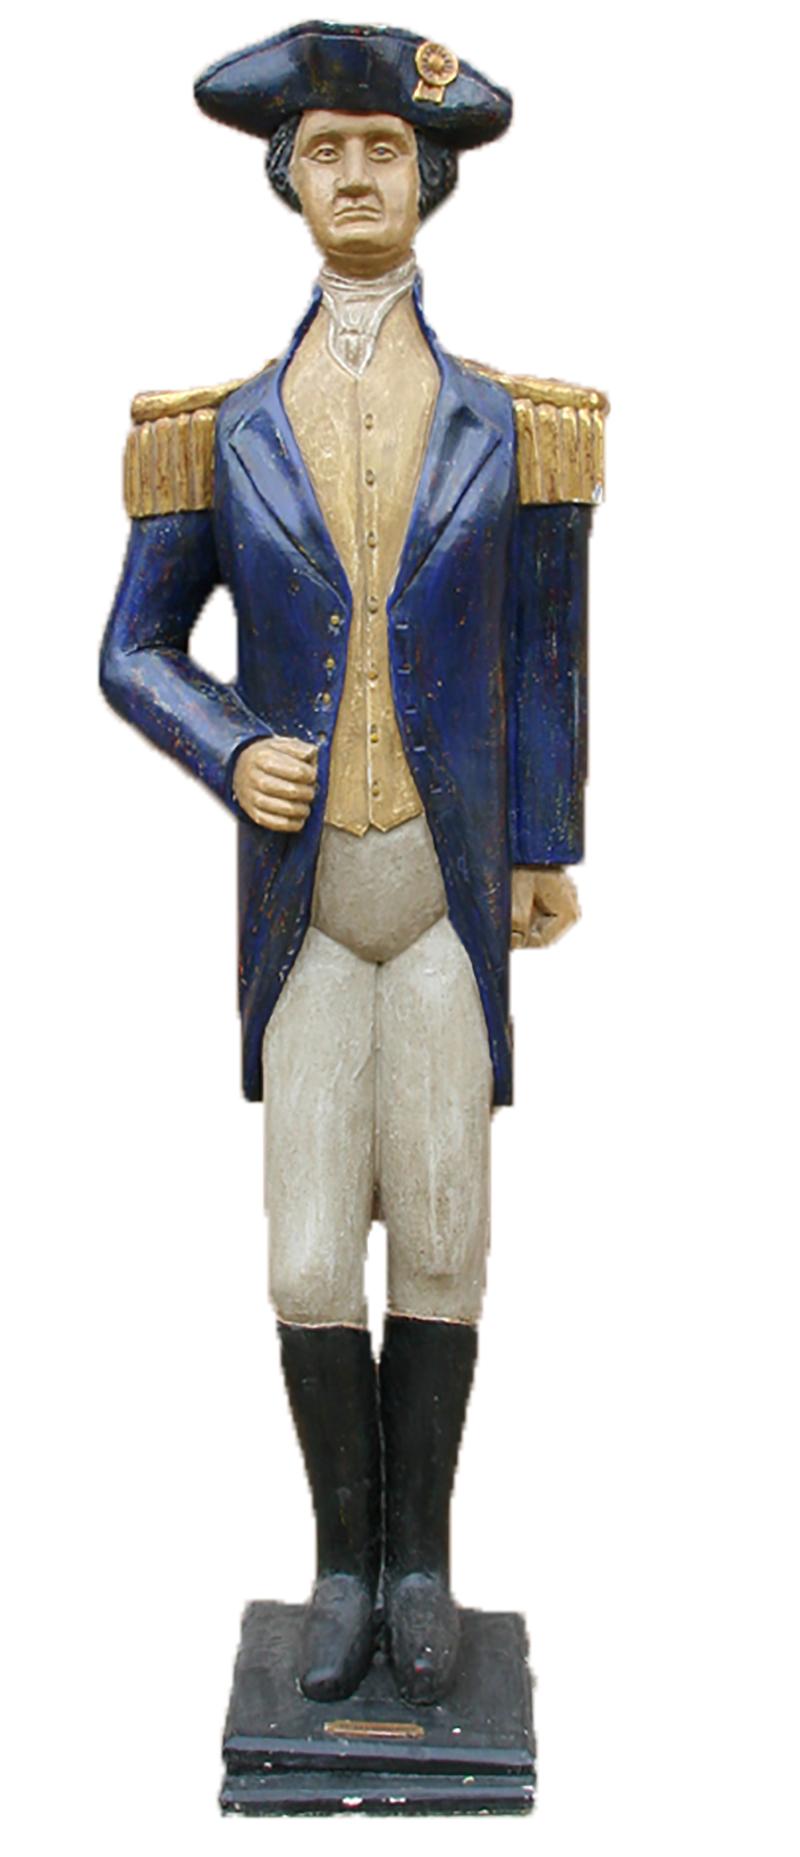 Figurative Sculpture M. Brodin - Sculpture unique en bois sculptée et peinte de George Washington